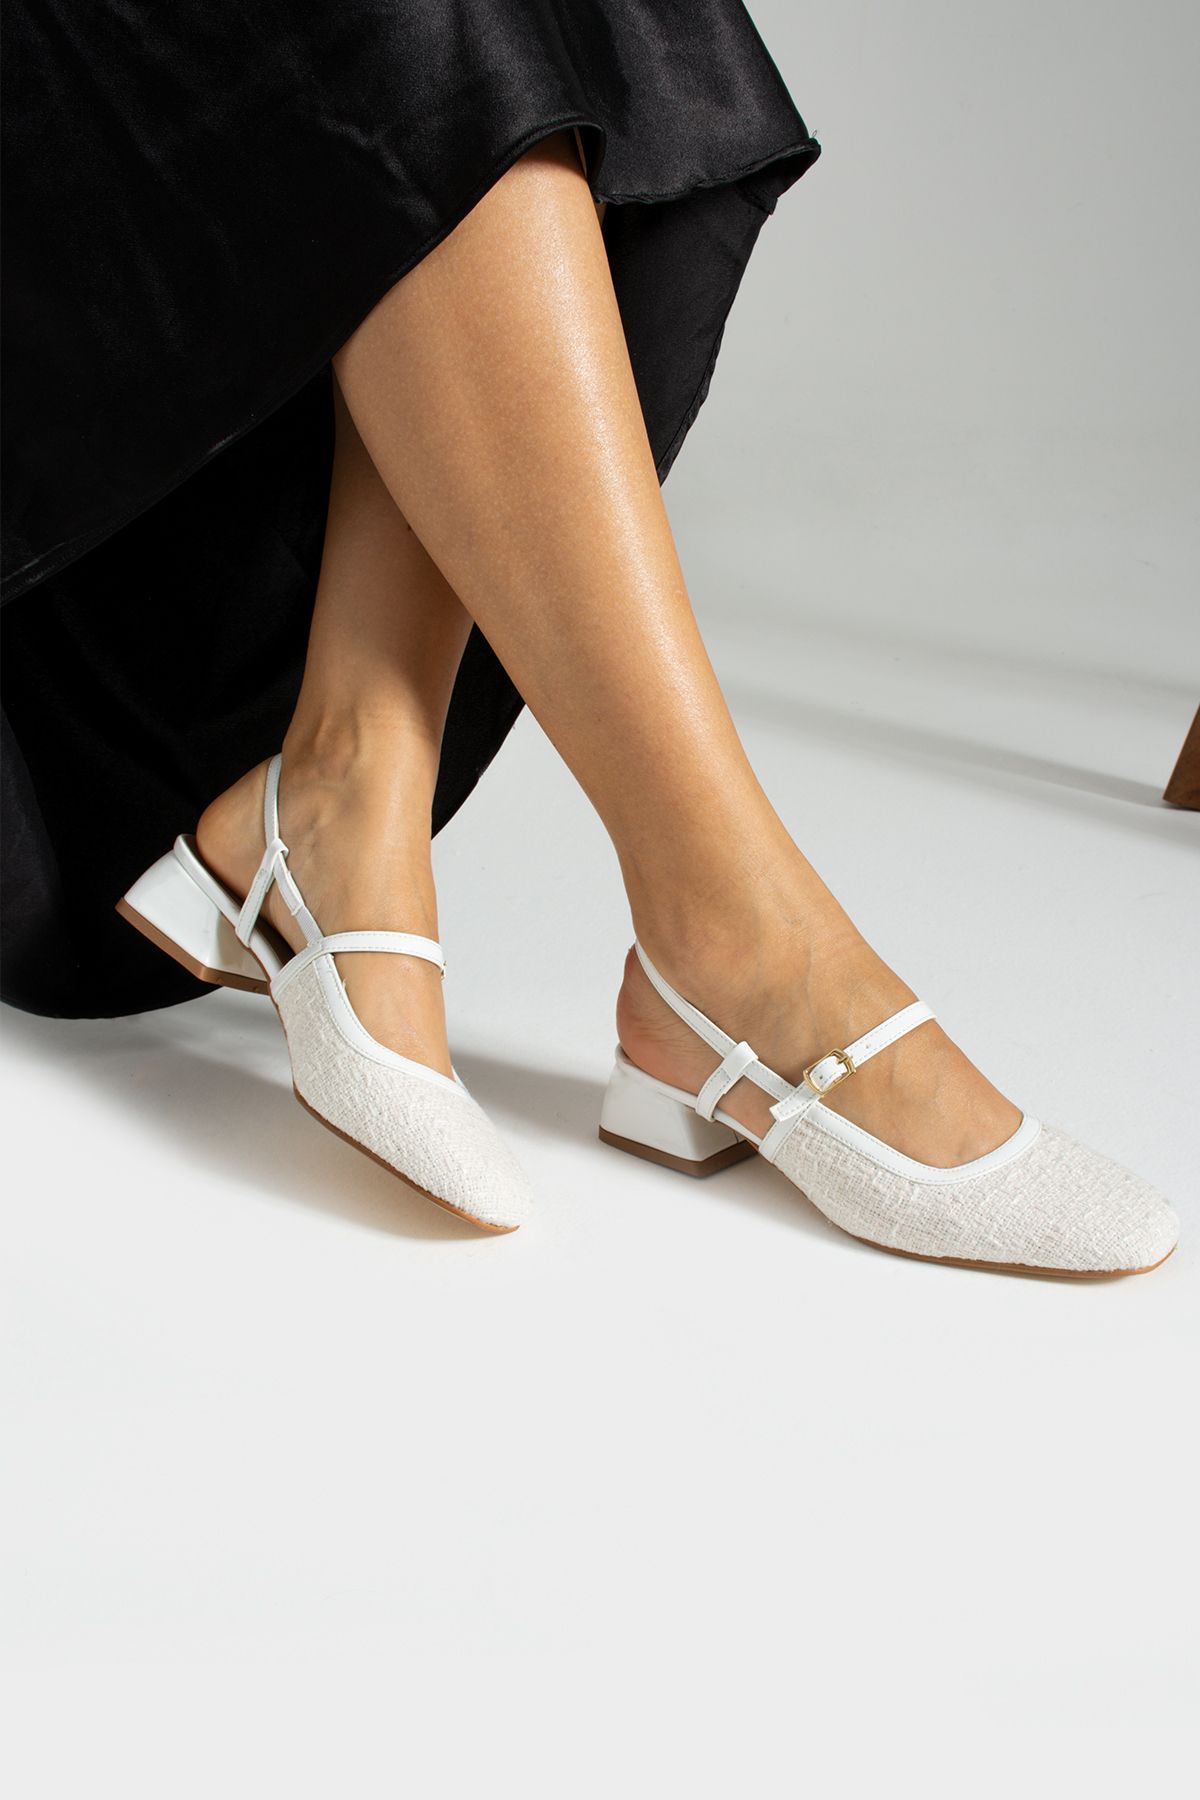 İnan Ayakkabı Kadın Beyaz Renk Detaylı Topuklu Ayakkabı 3 Cm Topuk